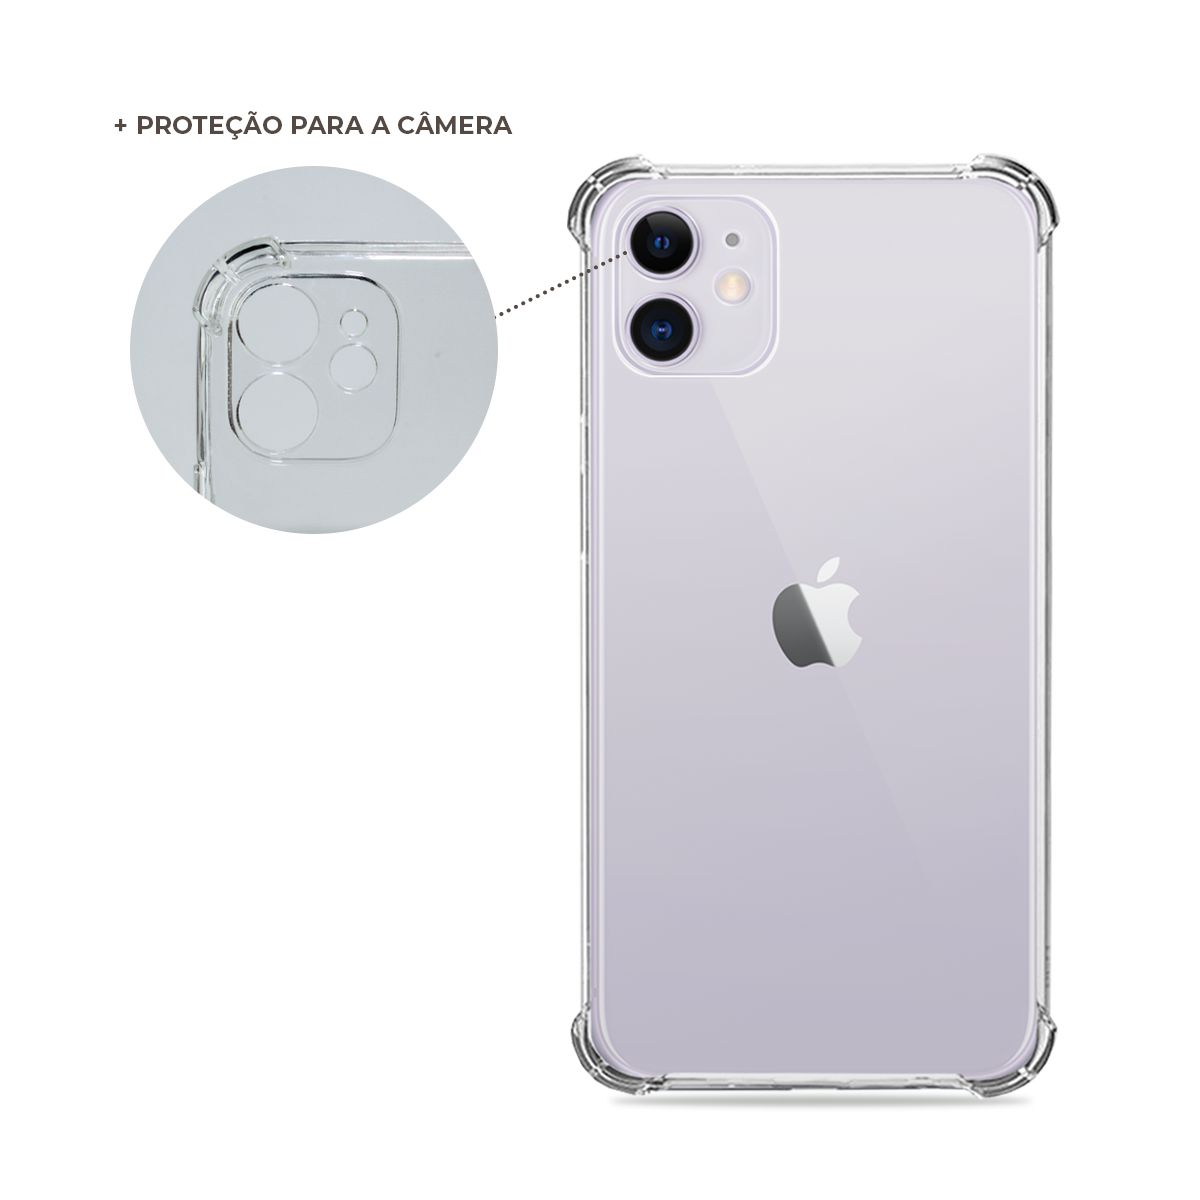 Capa Anti-Shock Transparente para iPhone 11 (com proteção para câmera) -  99capas - Capinhas e cases personalizadas para celular